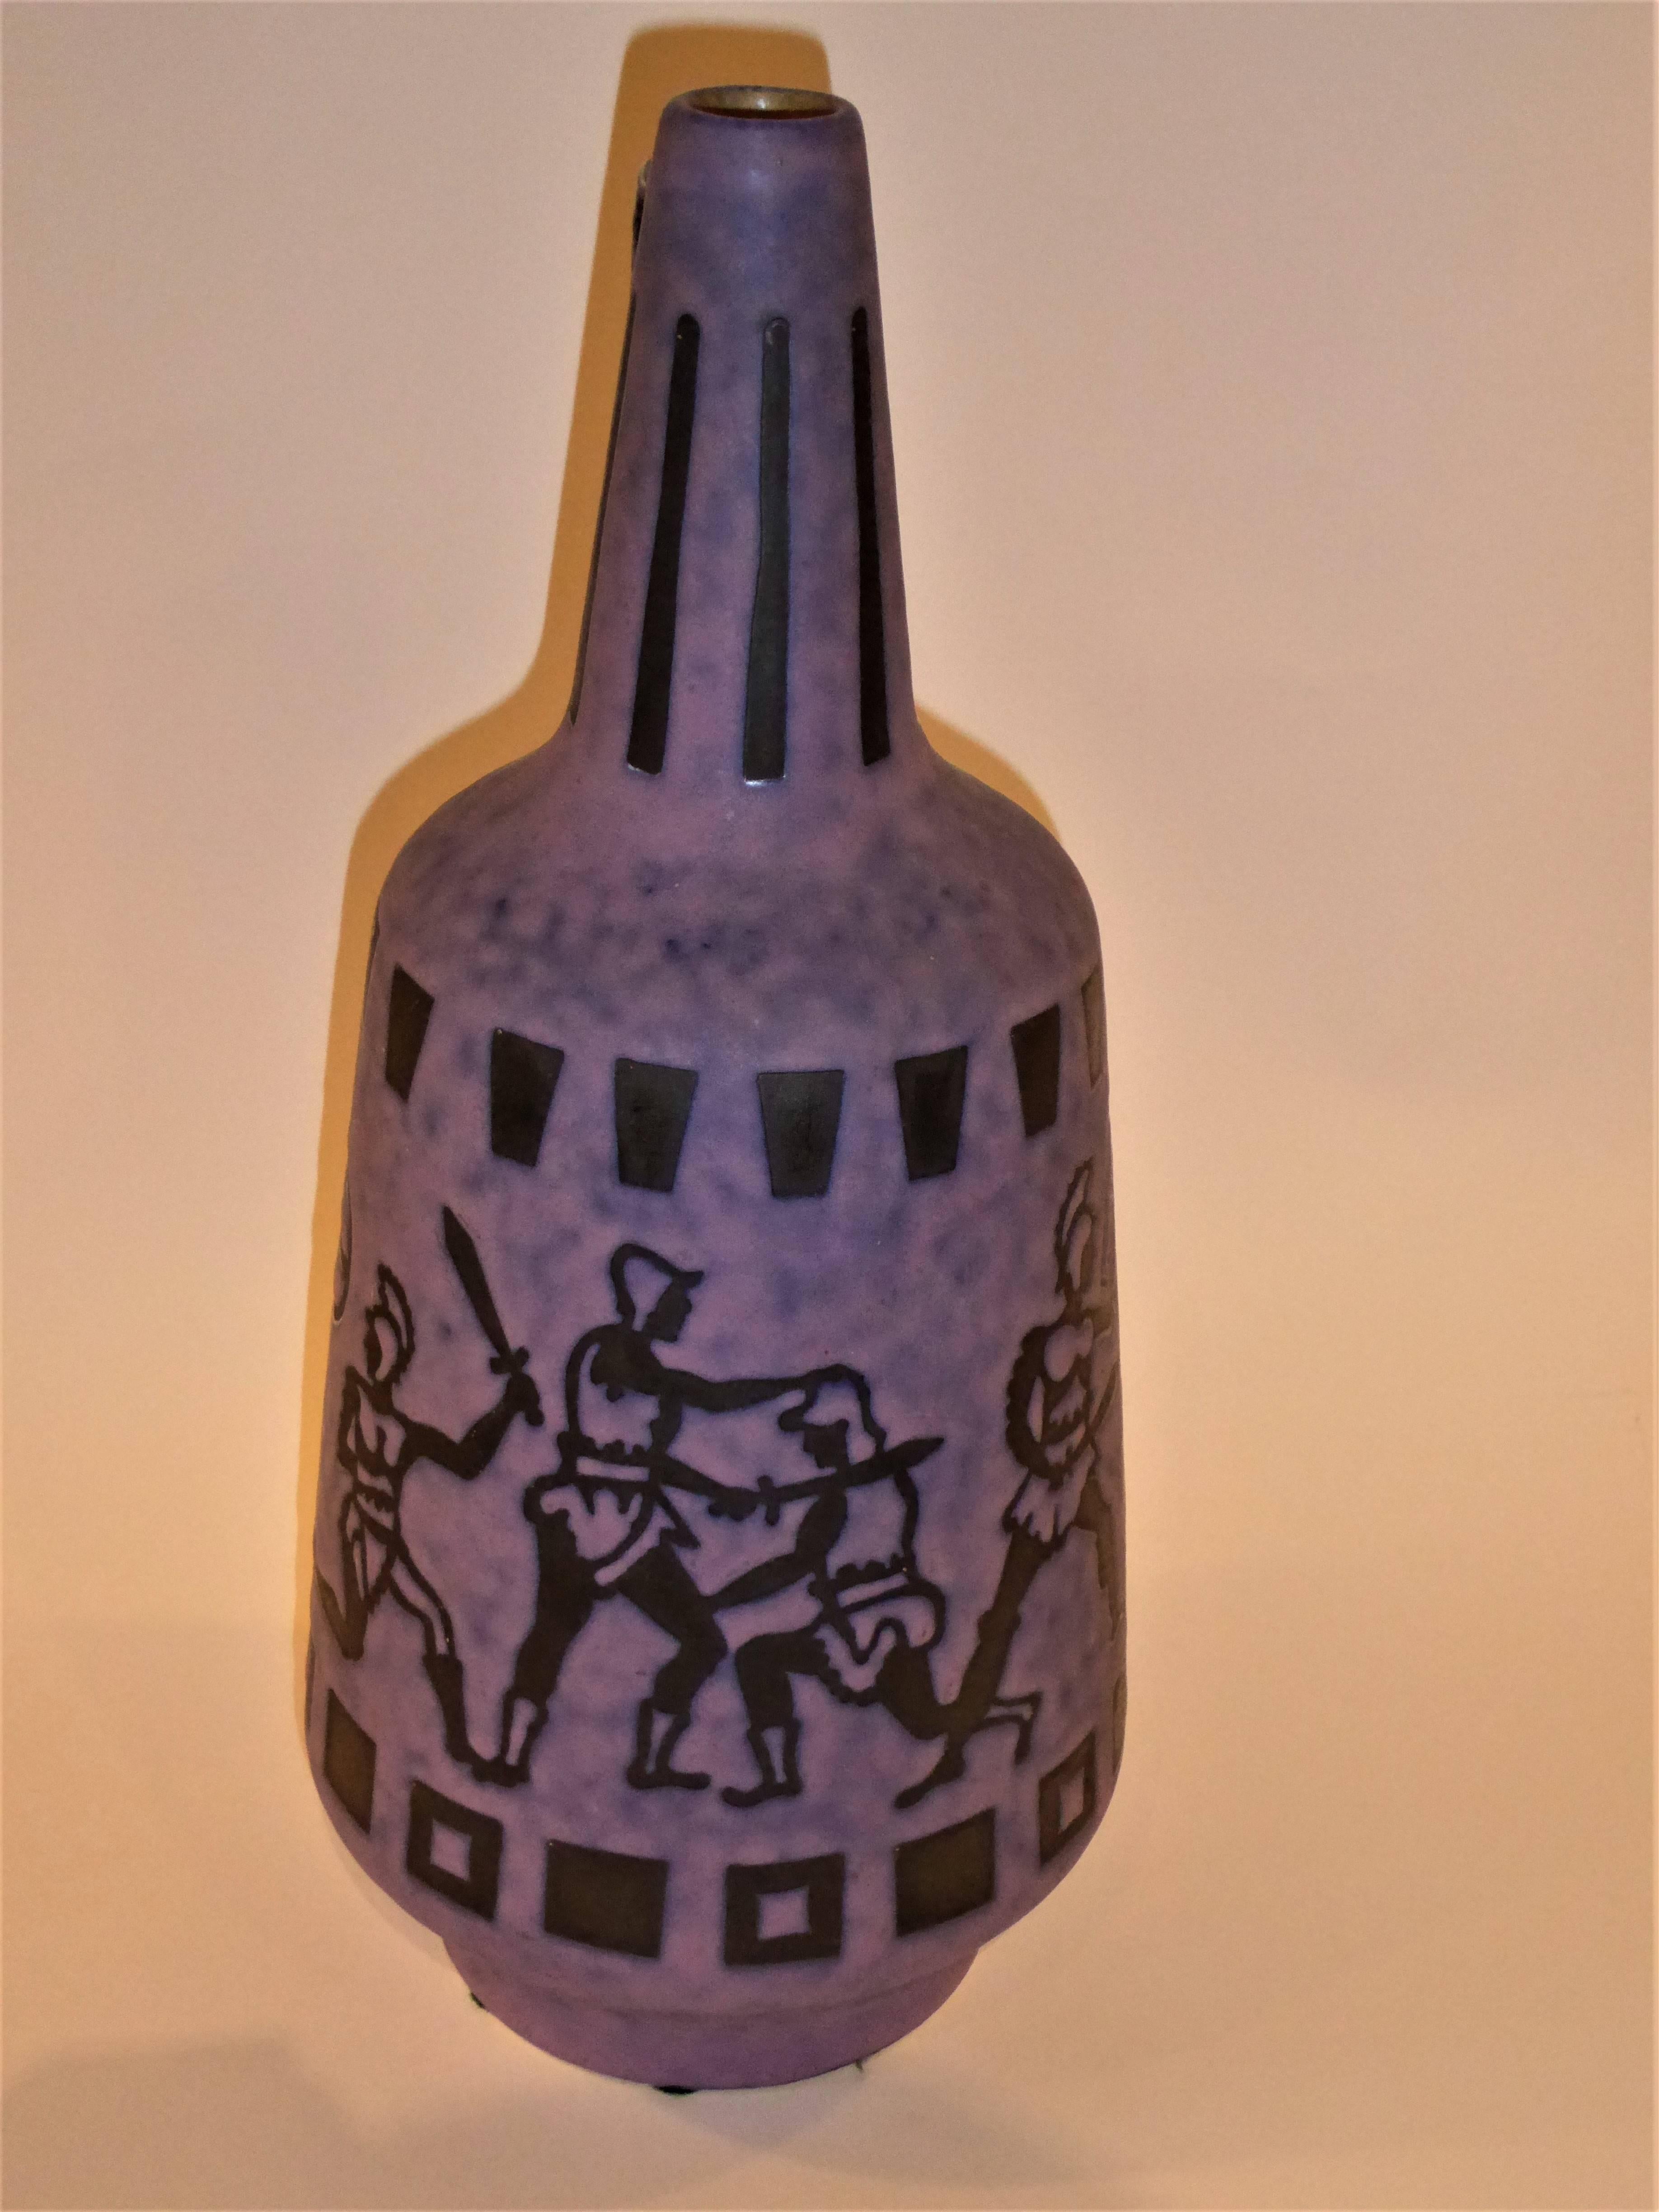 Mid-20th Century Tall 1960s Jopeko Keramik Vase Ewer Germany Mid-Century Modern